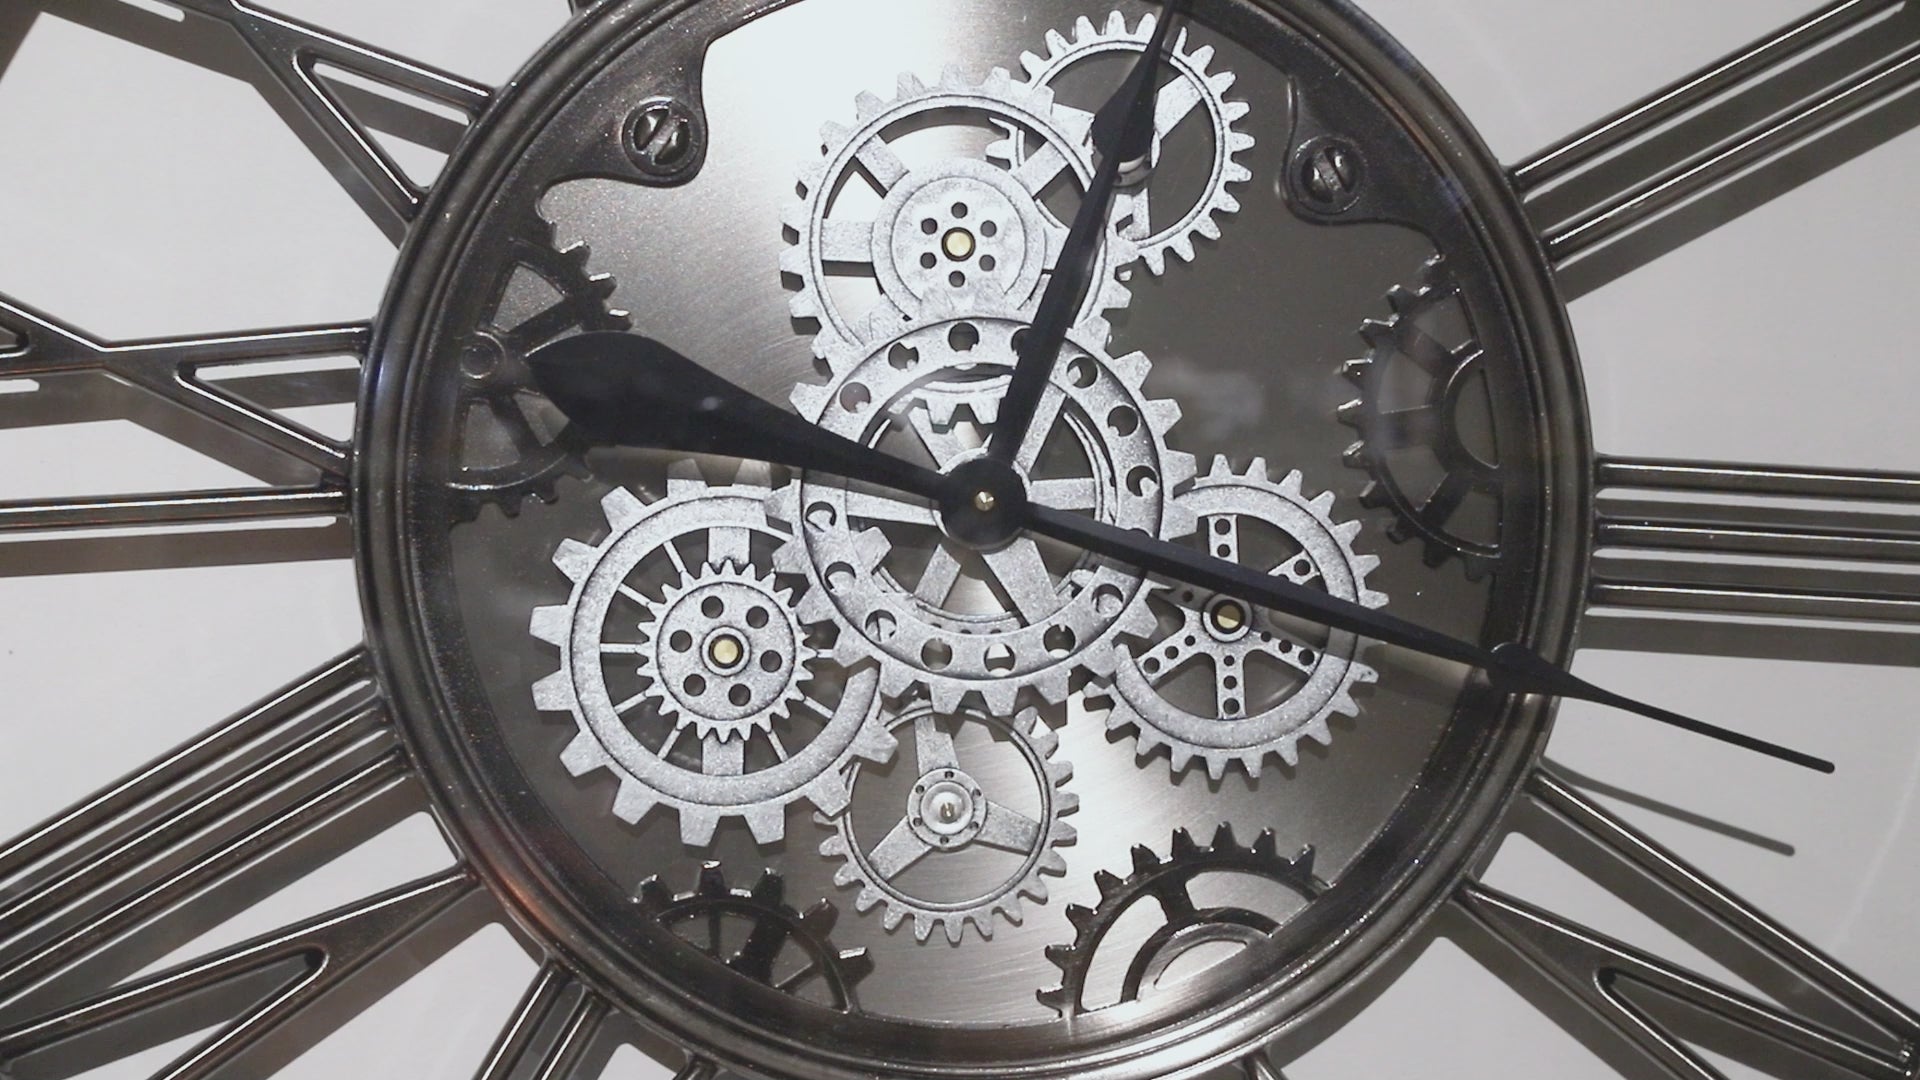  Gears Wall Clock - 86cm